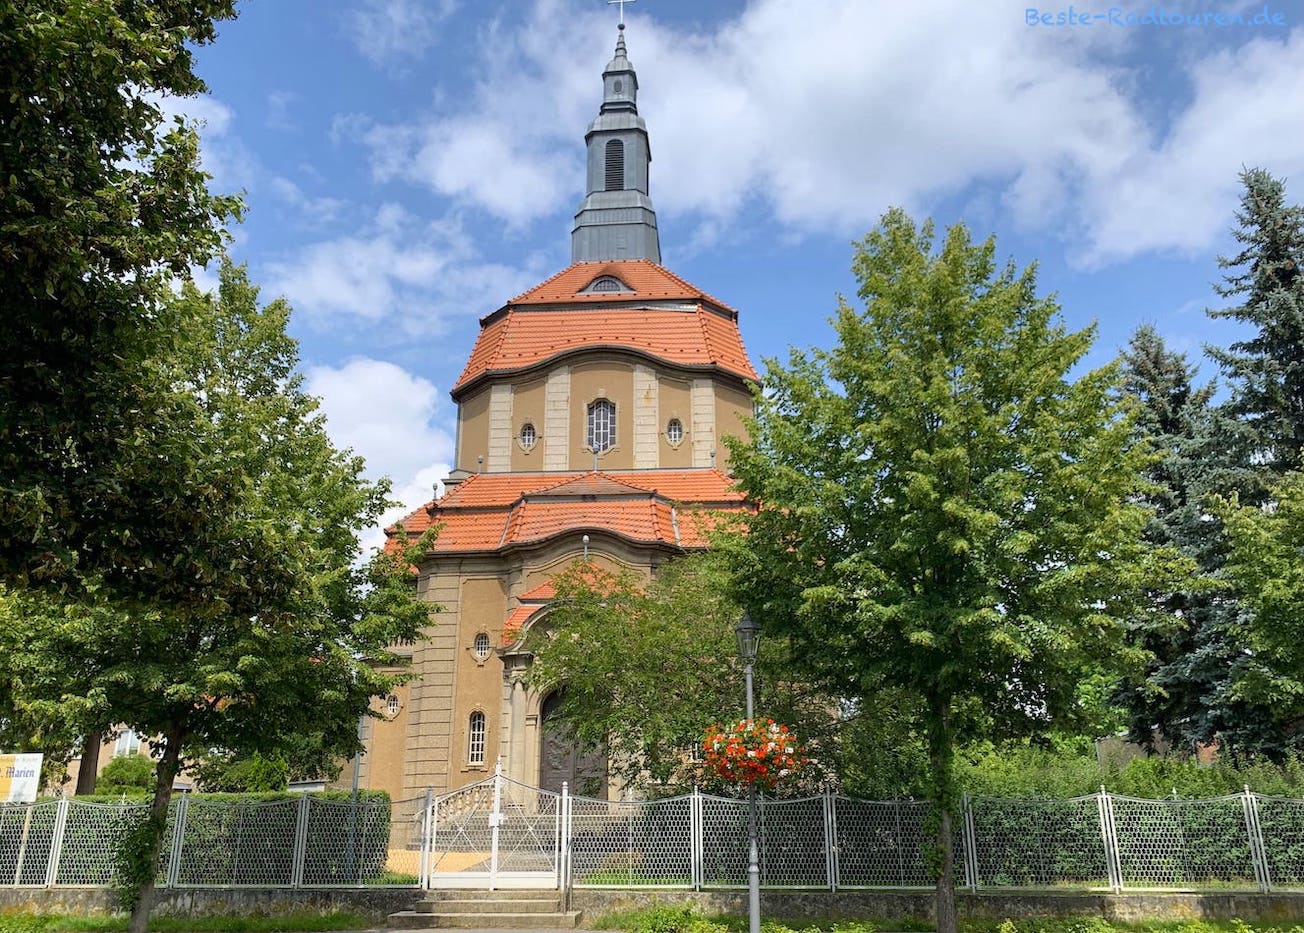 St.-Marien-Kirche Biesenthal, Foto von der Straße aus